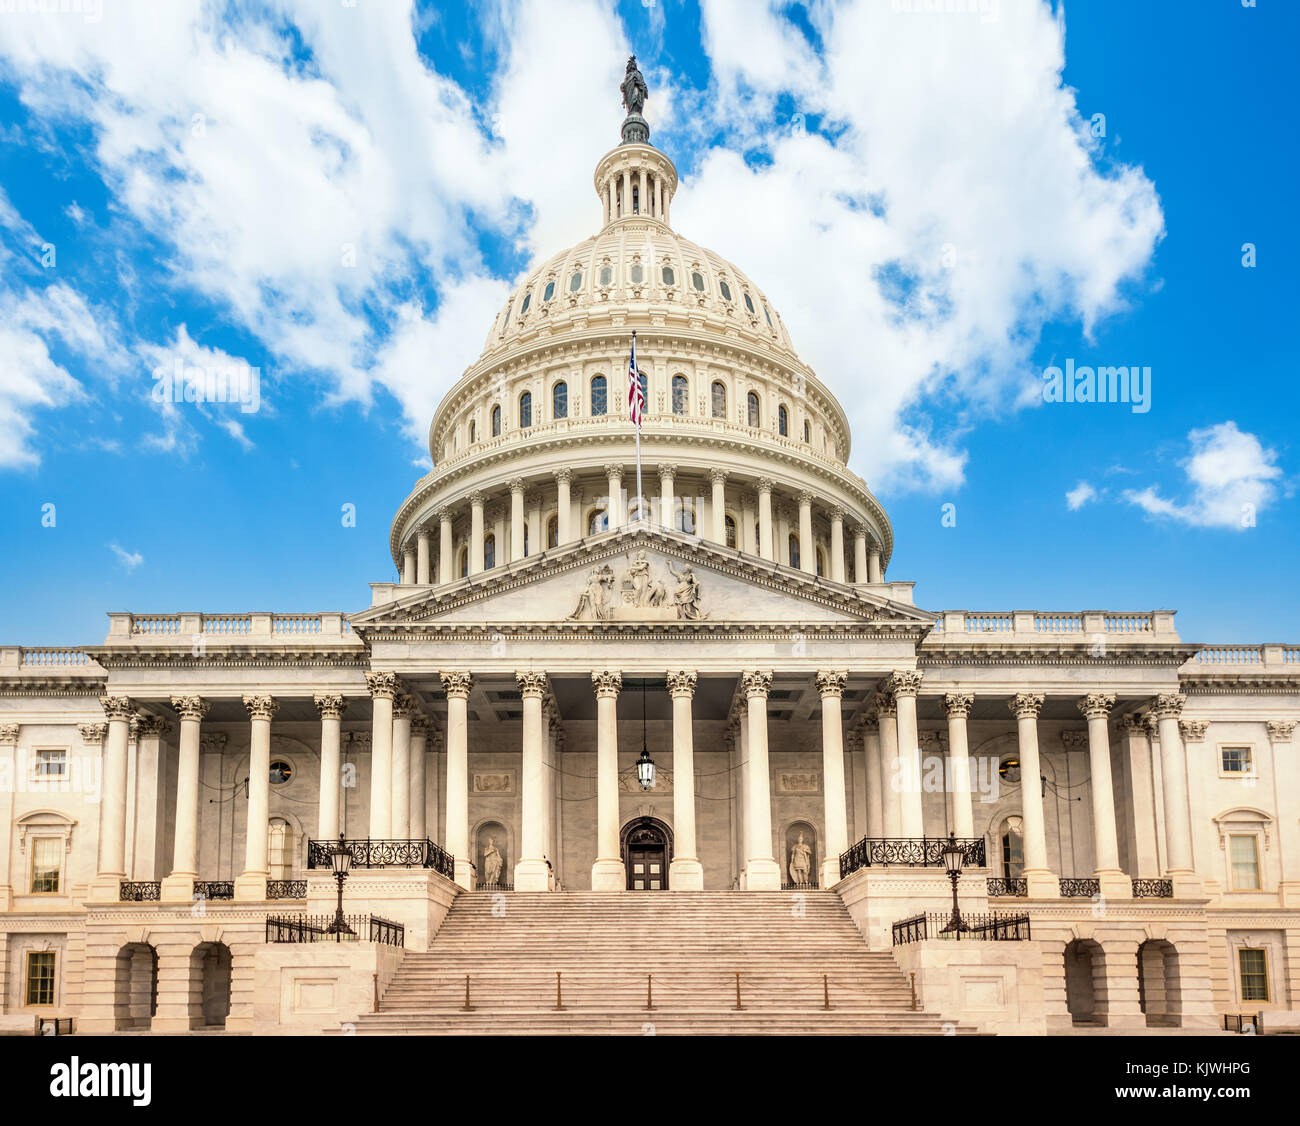 El edificio del Capitolio de los Estados Unidos en Washington DC - la fachada oriental de la famosa us landmark. Foto de stock